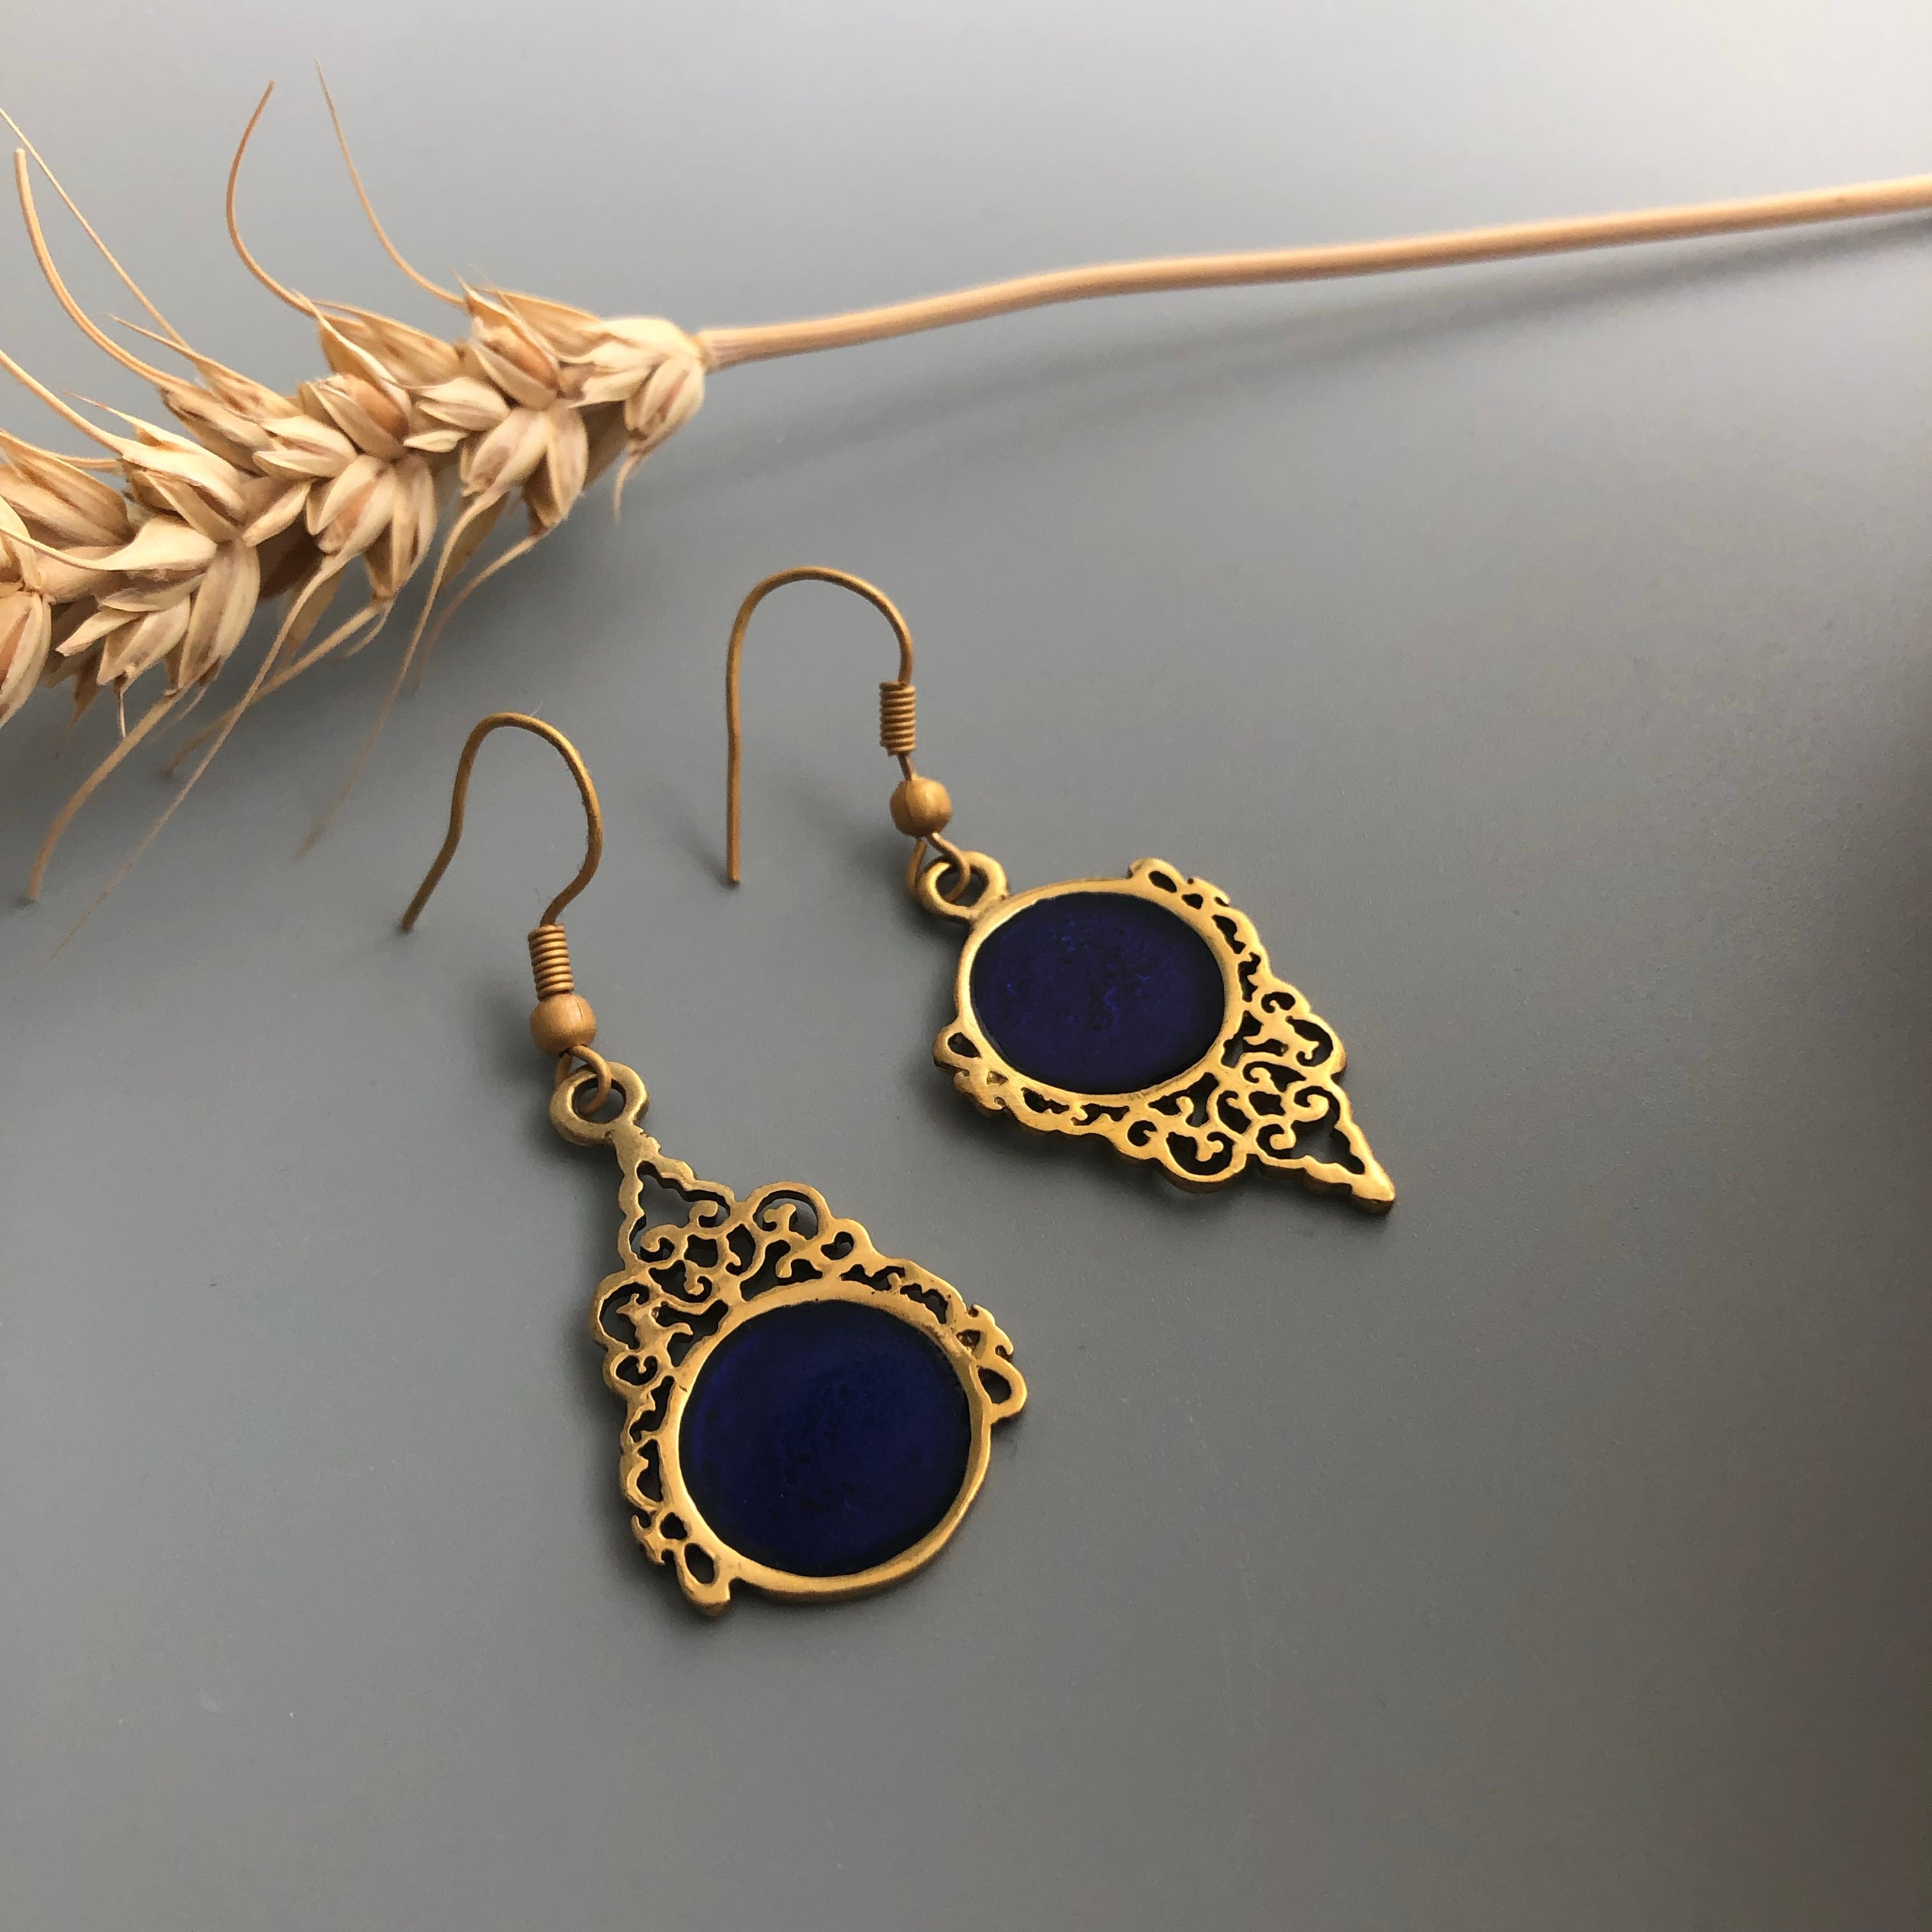 Persian Earrings-Persian Brass Earrings with Enamel in Dark Blue:Persian Jewelry-AFRA ART GALLERY